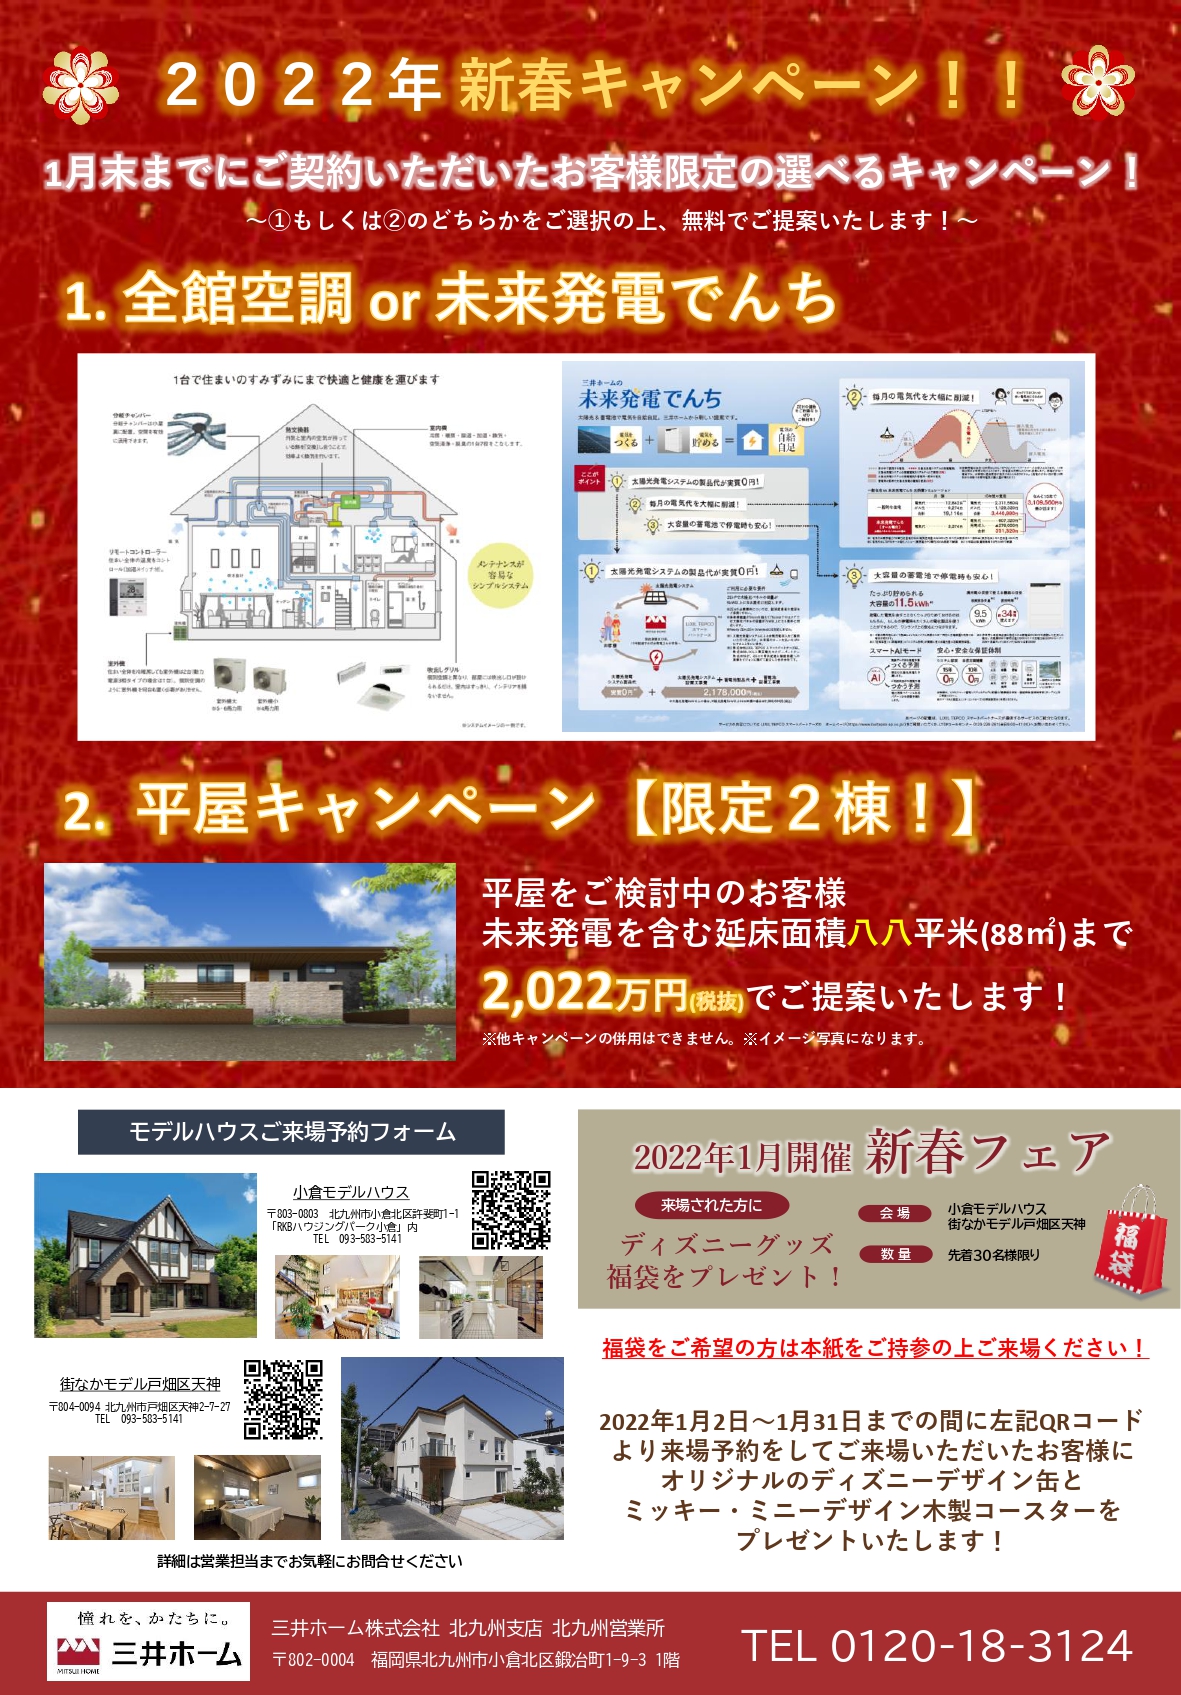 三井ホーム 1月新春キャンペーン情報 北九州の住宅展示場ならrkb住宅展